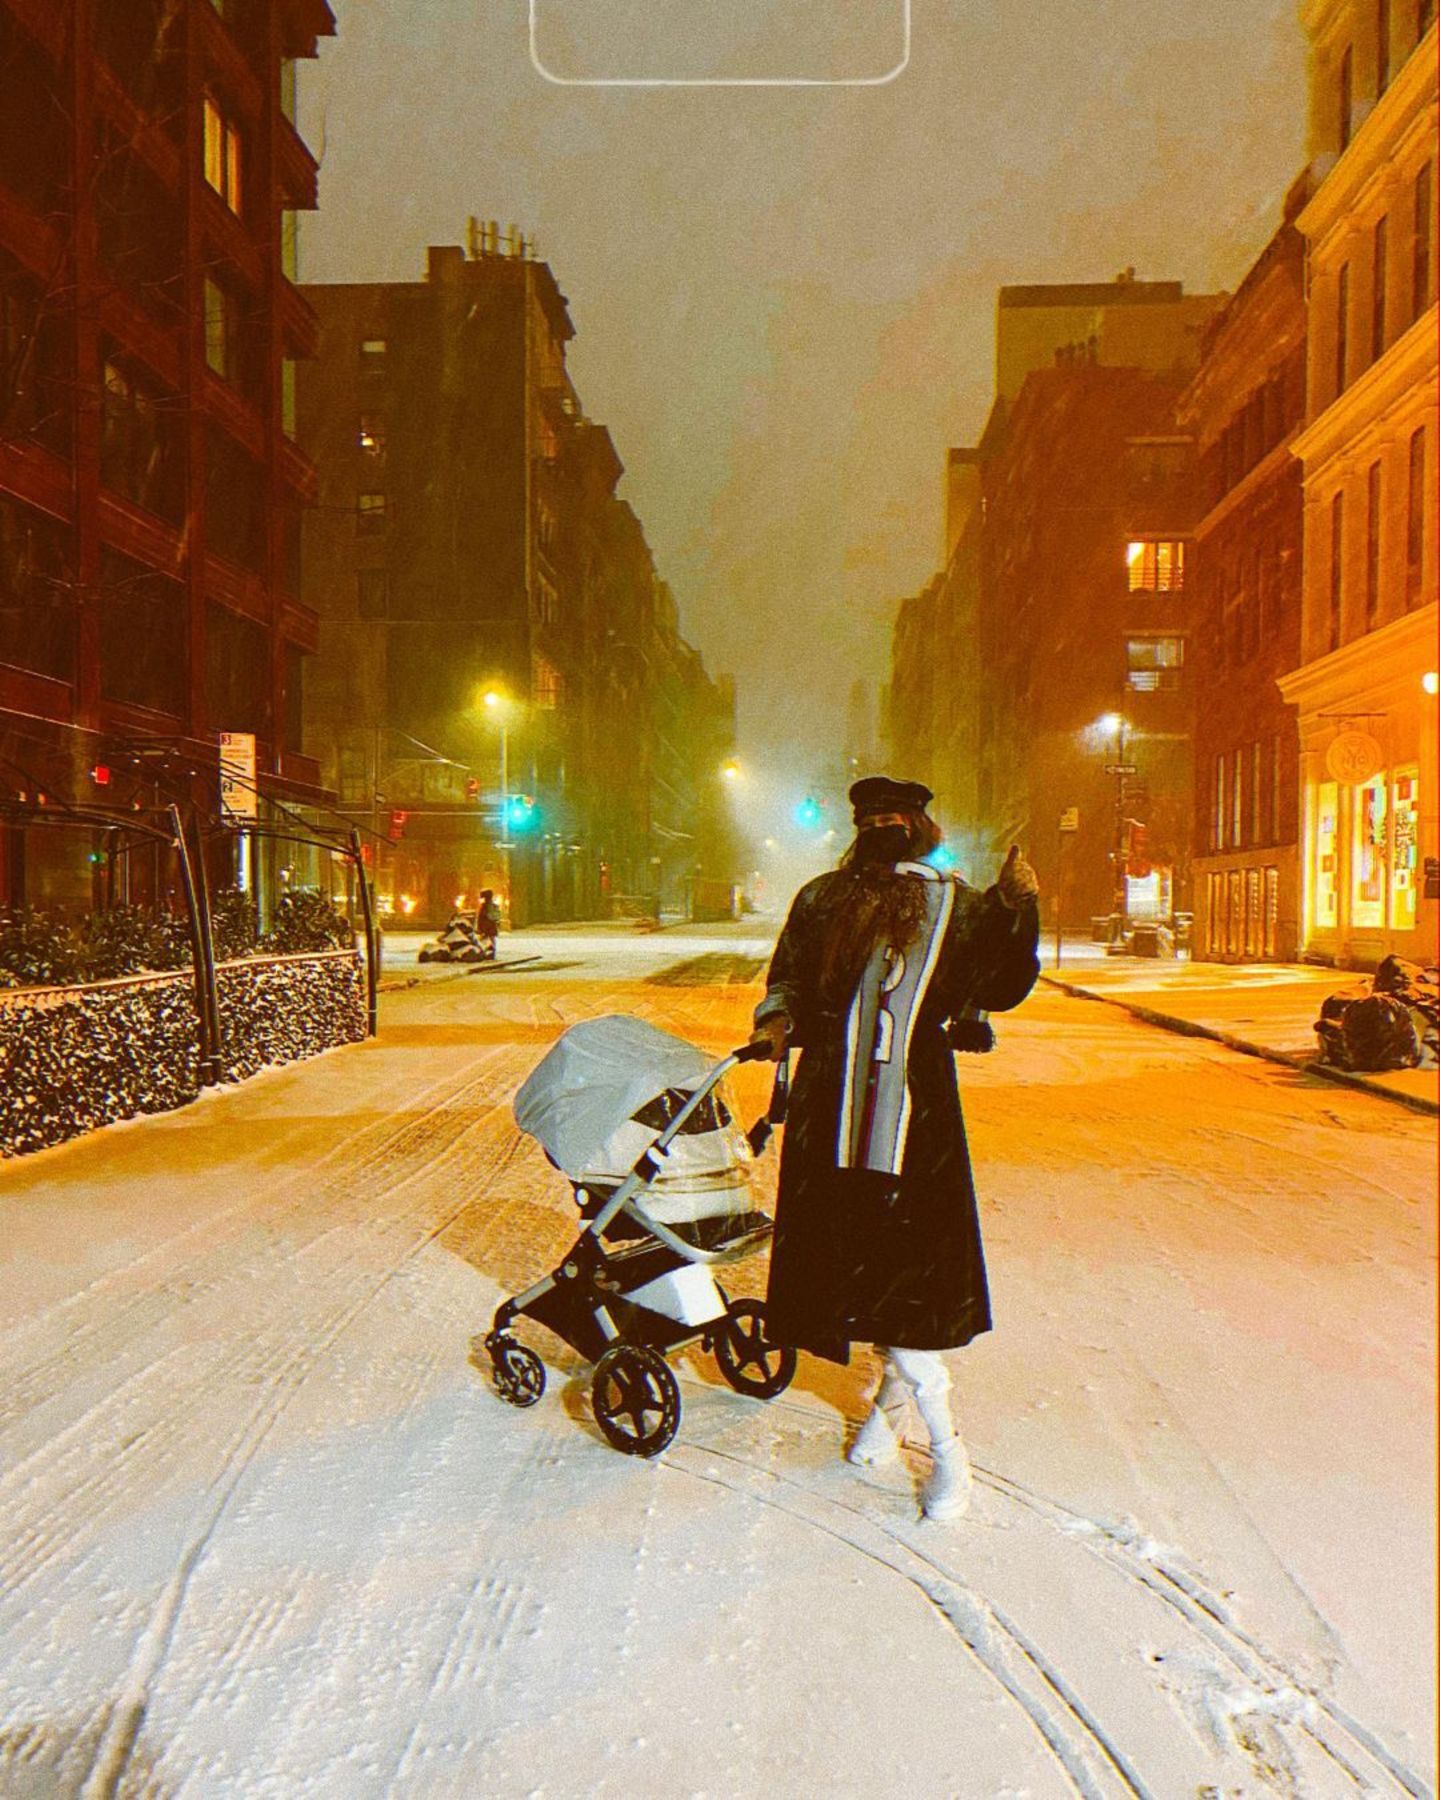 17. Dezember 2020  New York erlebt den größten Schneesturm der letzten Jahre und mitten drin steht - kaum zu erkennen - Gigi Hadid mit ihrer kleinen Tochter. Zu diesem Instagram-Schnappschuss schreibt das Topmodel: "Ihr erster Schnee" - aber was für einer!